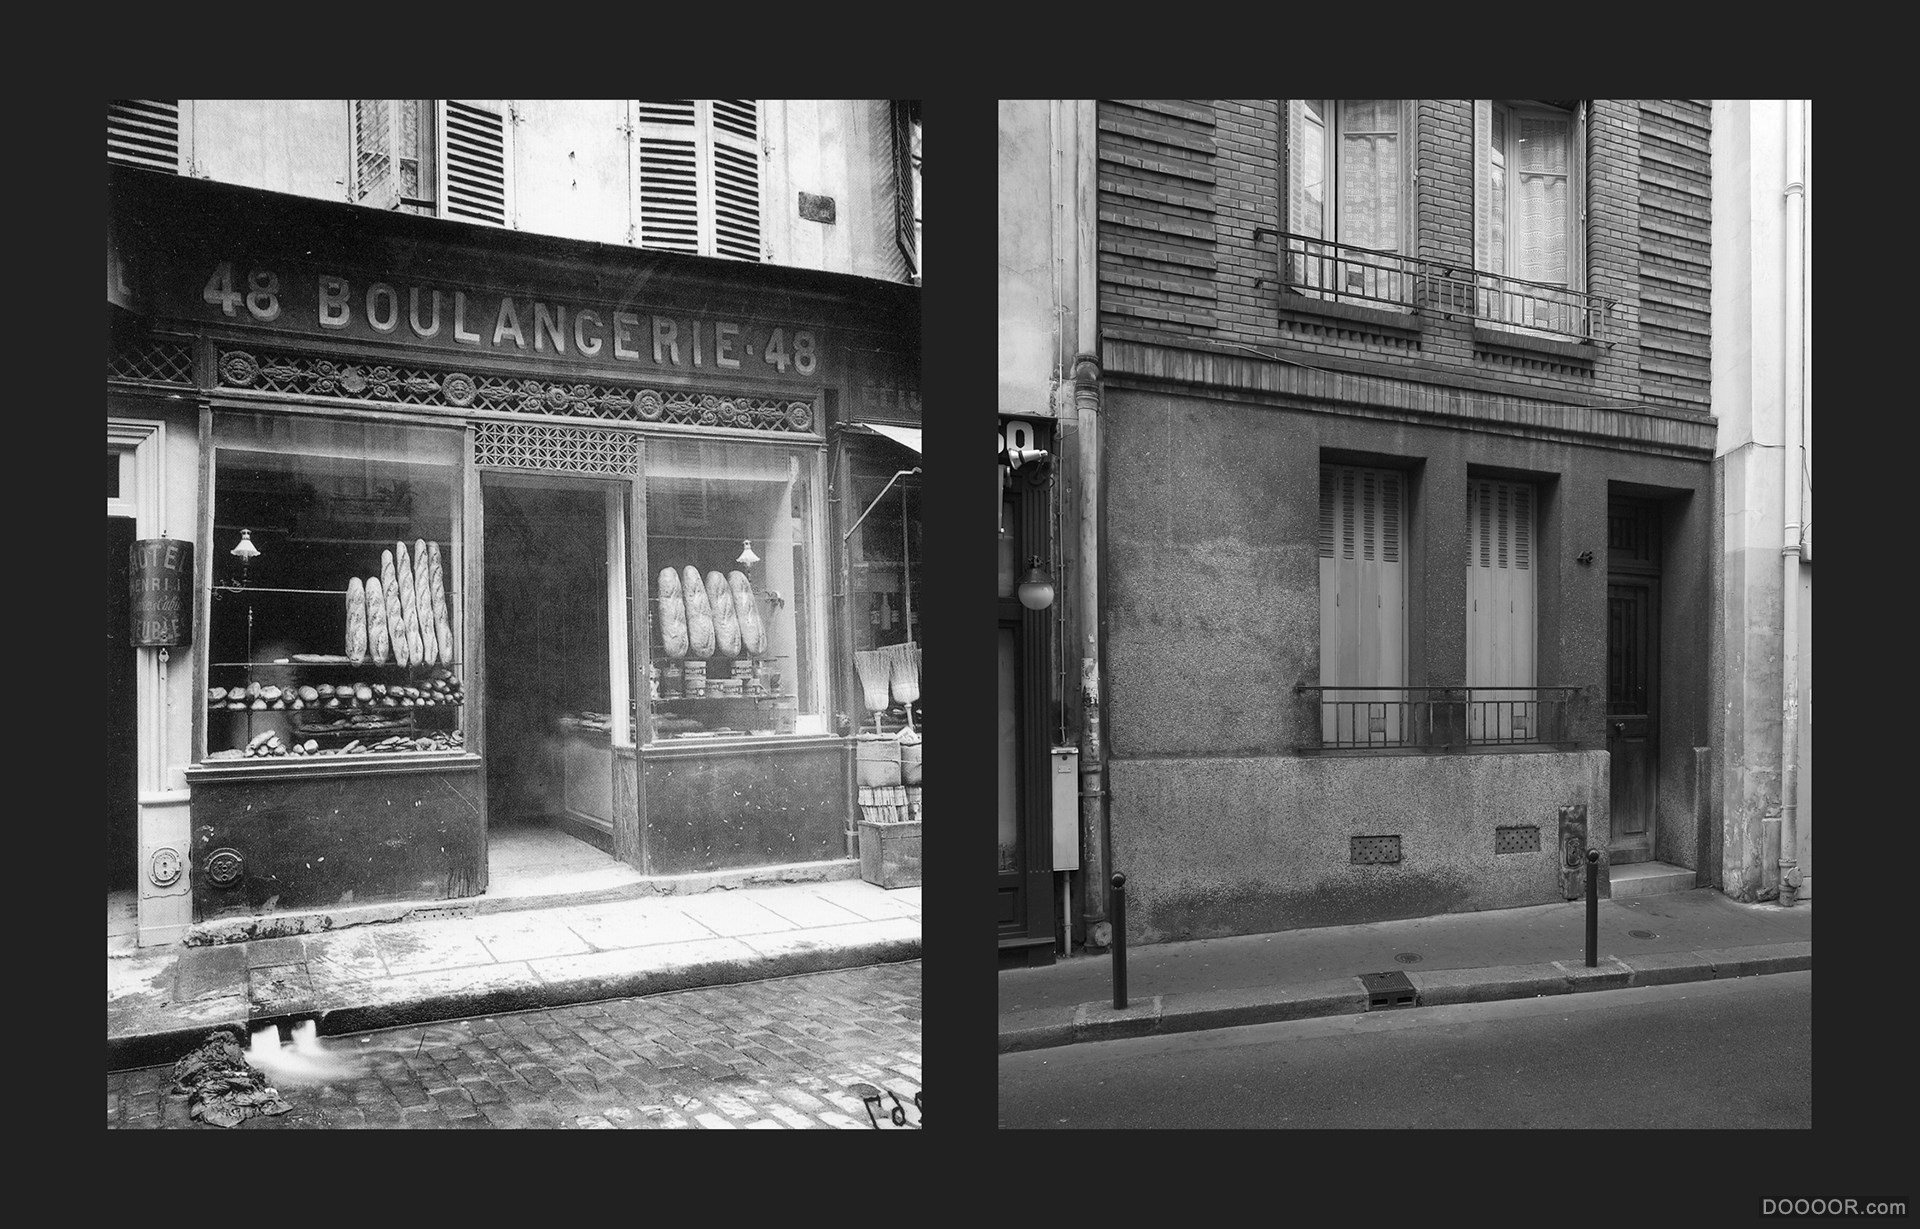 过去与现在-巴黎街头照片对比 [50P] (11).jpg